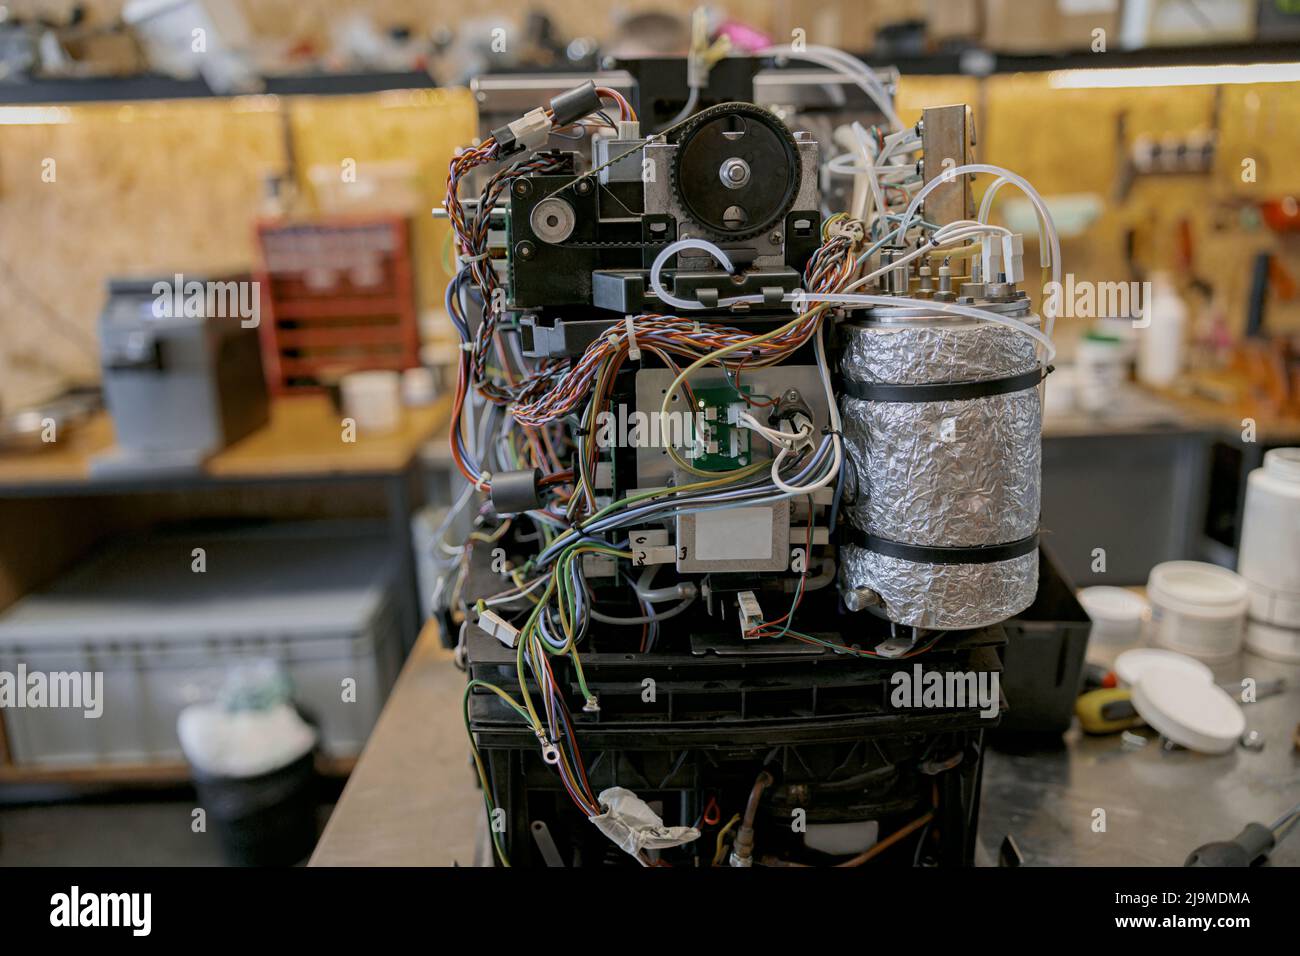 L'interno di un'espressomachina difettosa, pronta per essere riparata. Foto Stock